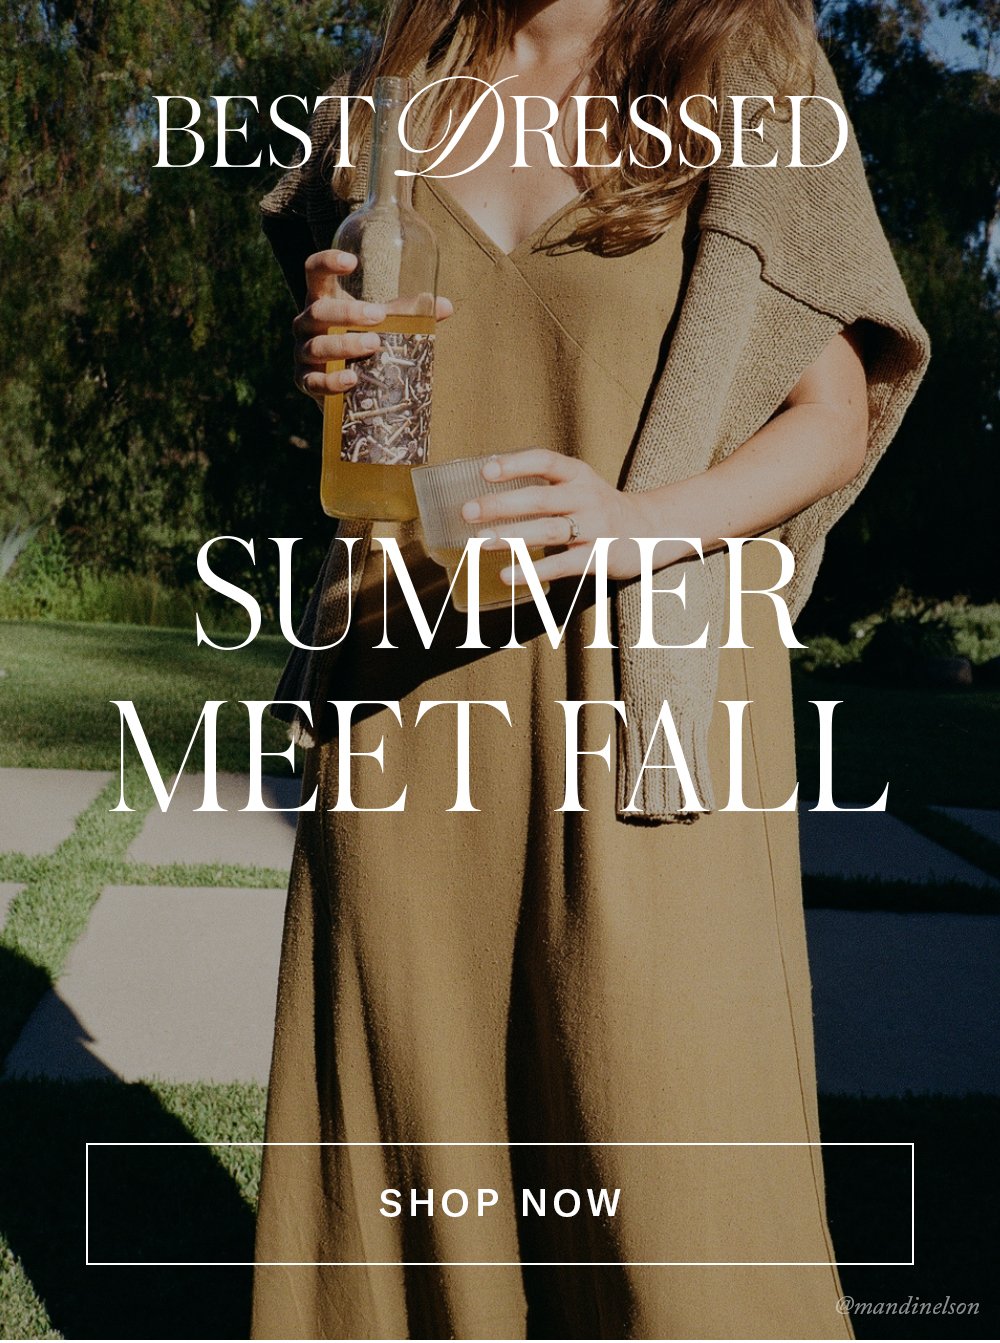 Best Dressed Summer Meet Fall